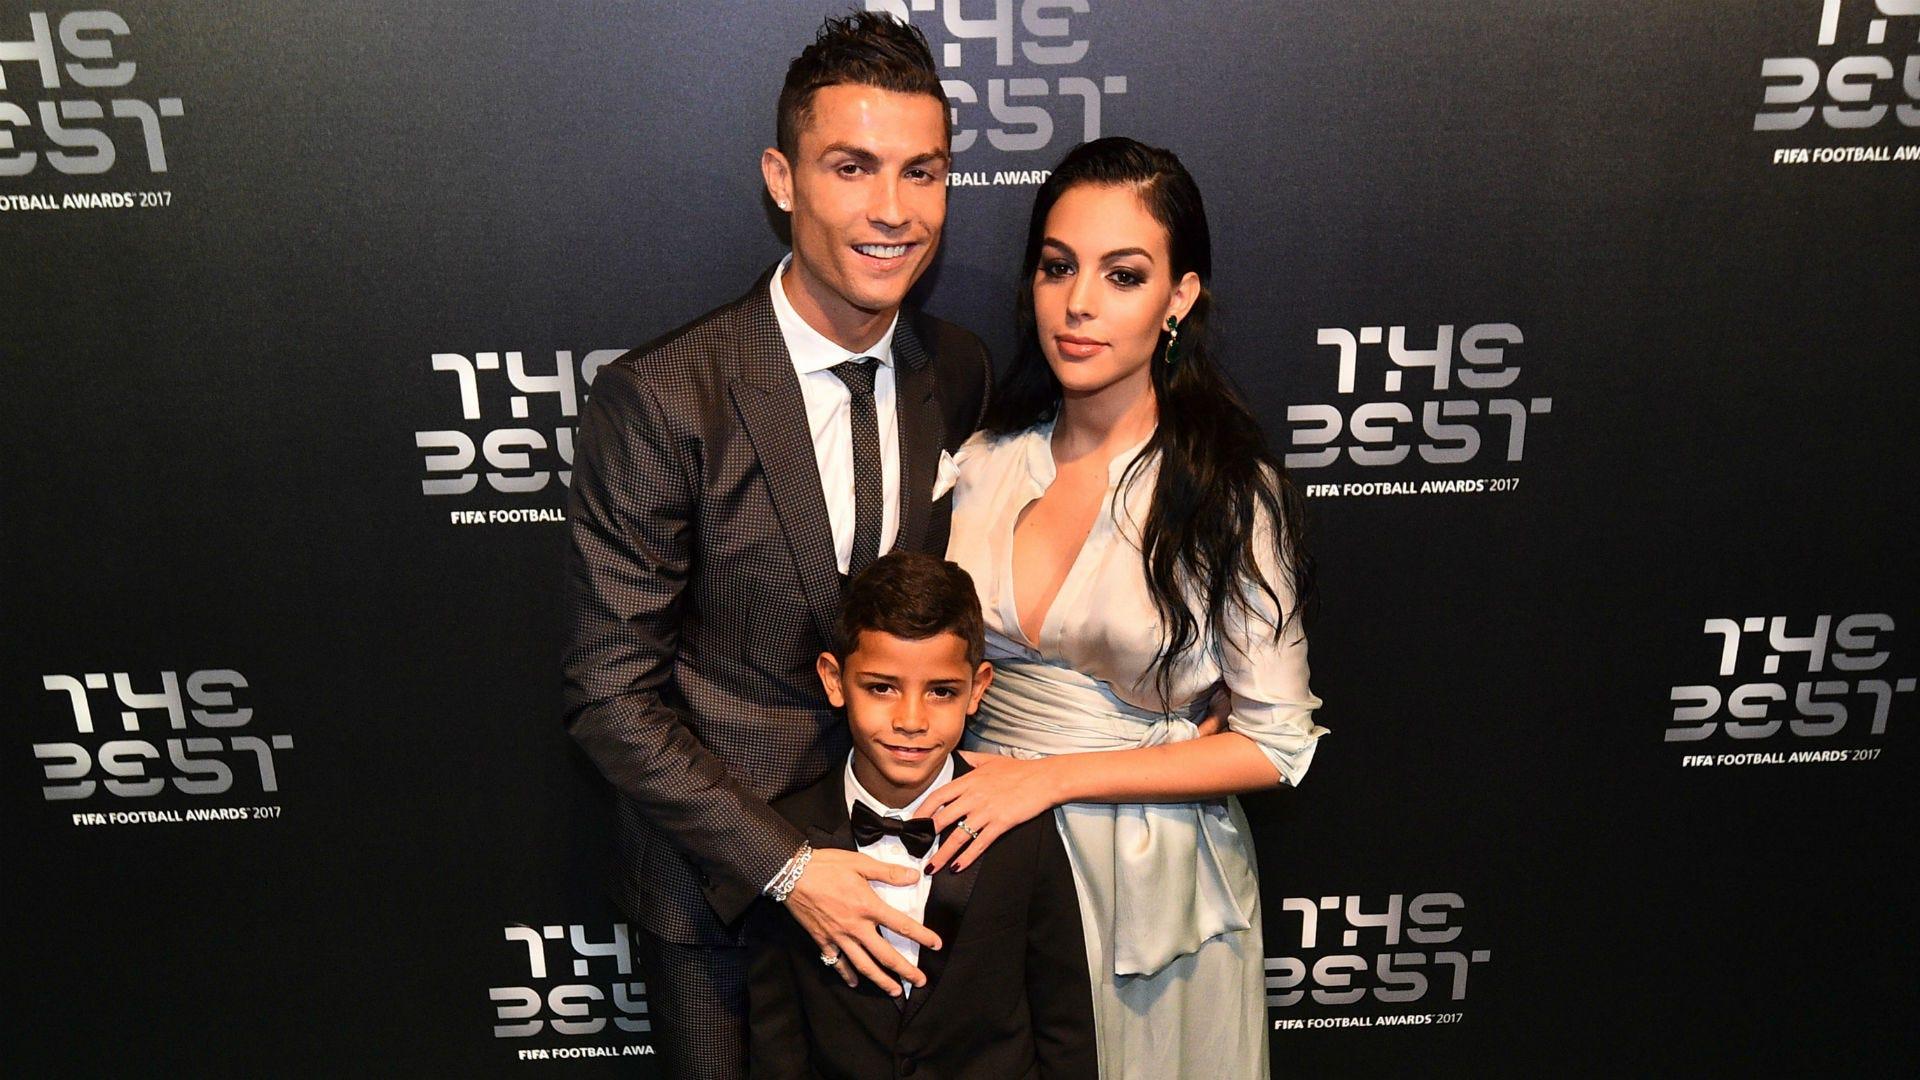 Ronaldo's Family